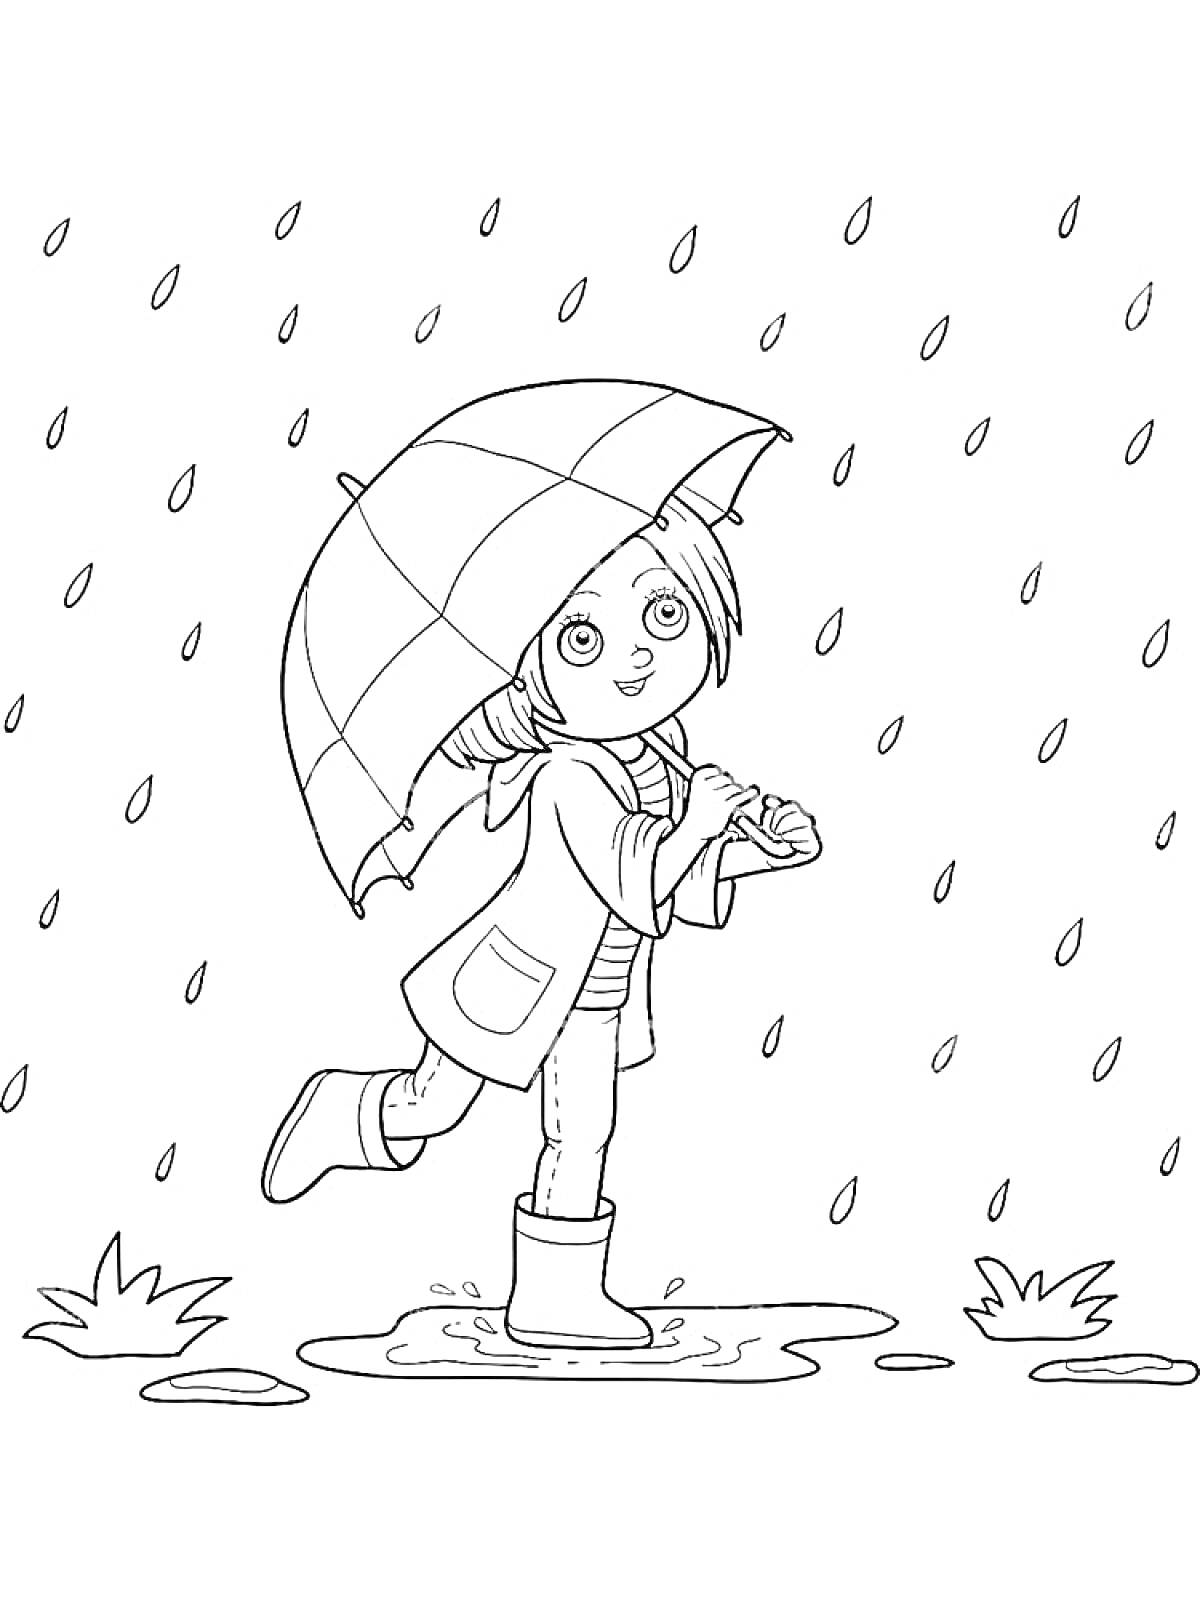 Раскраска Девочка с зонтом в дождь, стоящая в луже с травой вокруг